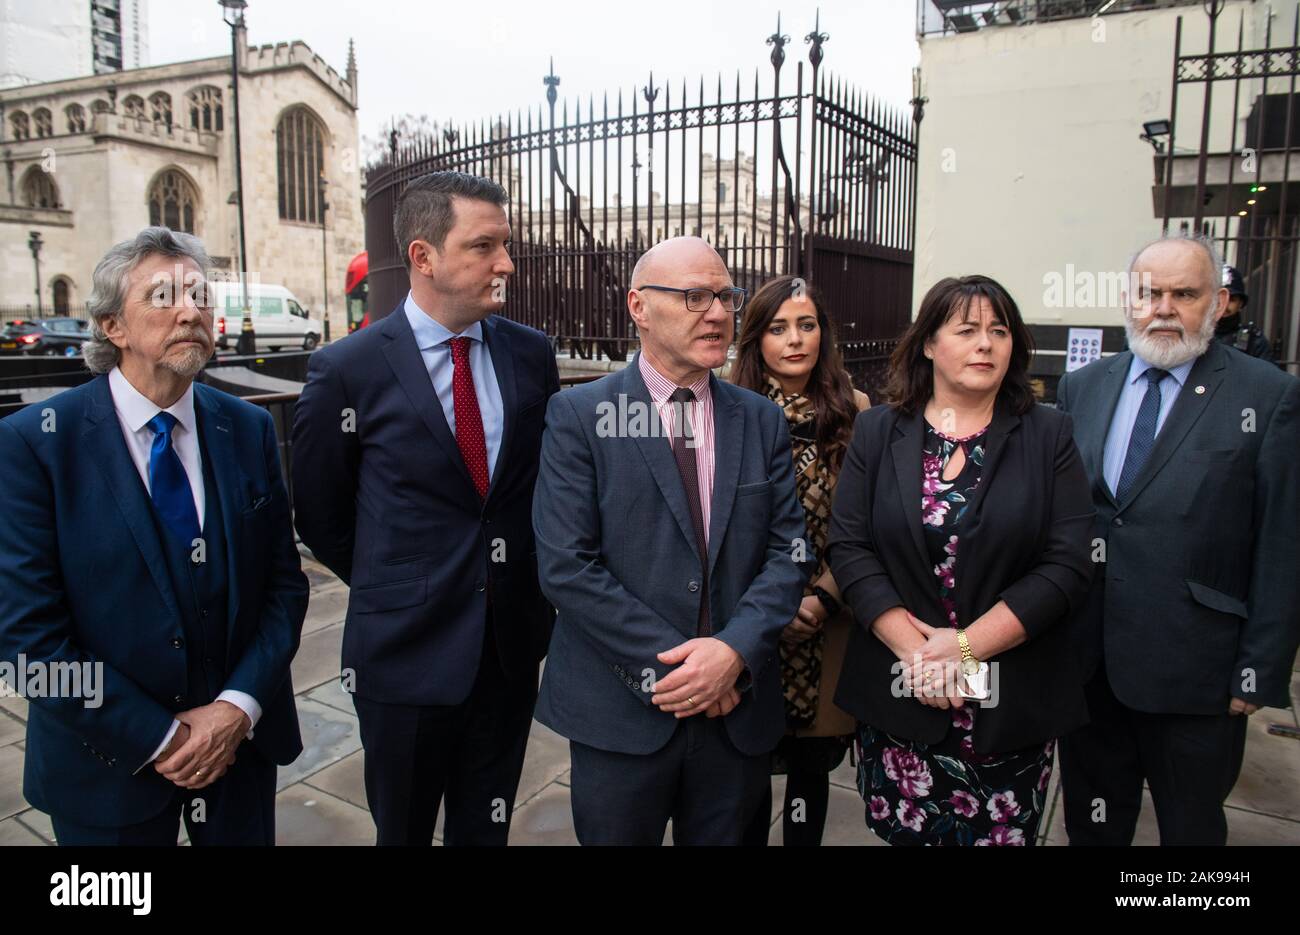 Les députés nouvellement élus Sinn Fein (de gauche à droite) Mickey Brady, John Finucane, Paul Maskey, Gildernew Orfhlaith Begley, Michelle et Francie Molloy parler aux médias à l'extérieur du Parlement, à Westminster, Londres. Banque D'Images